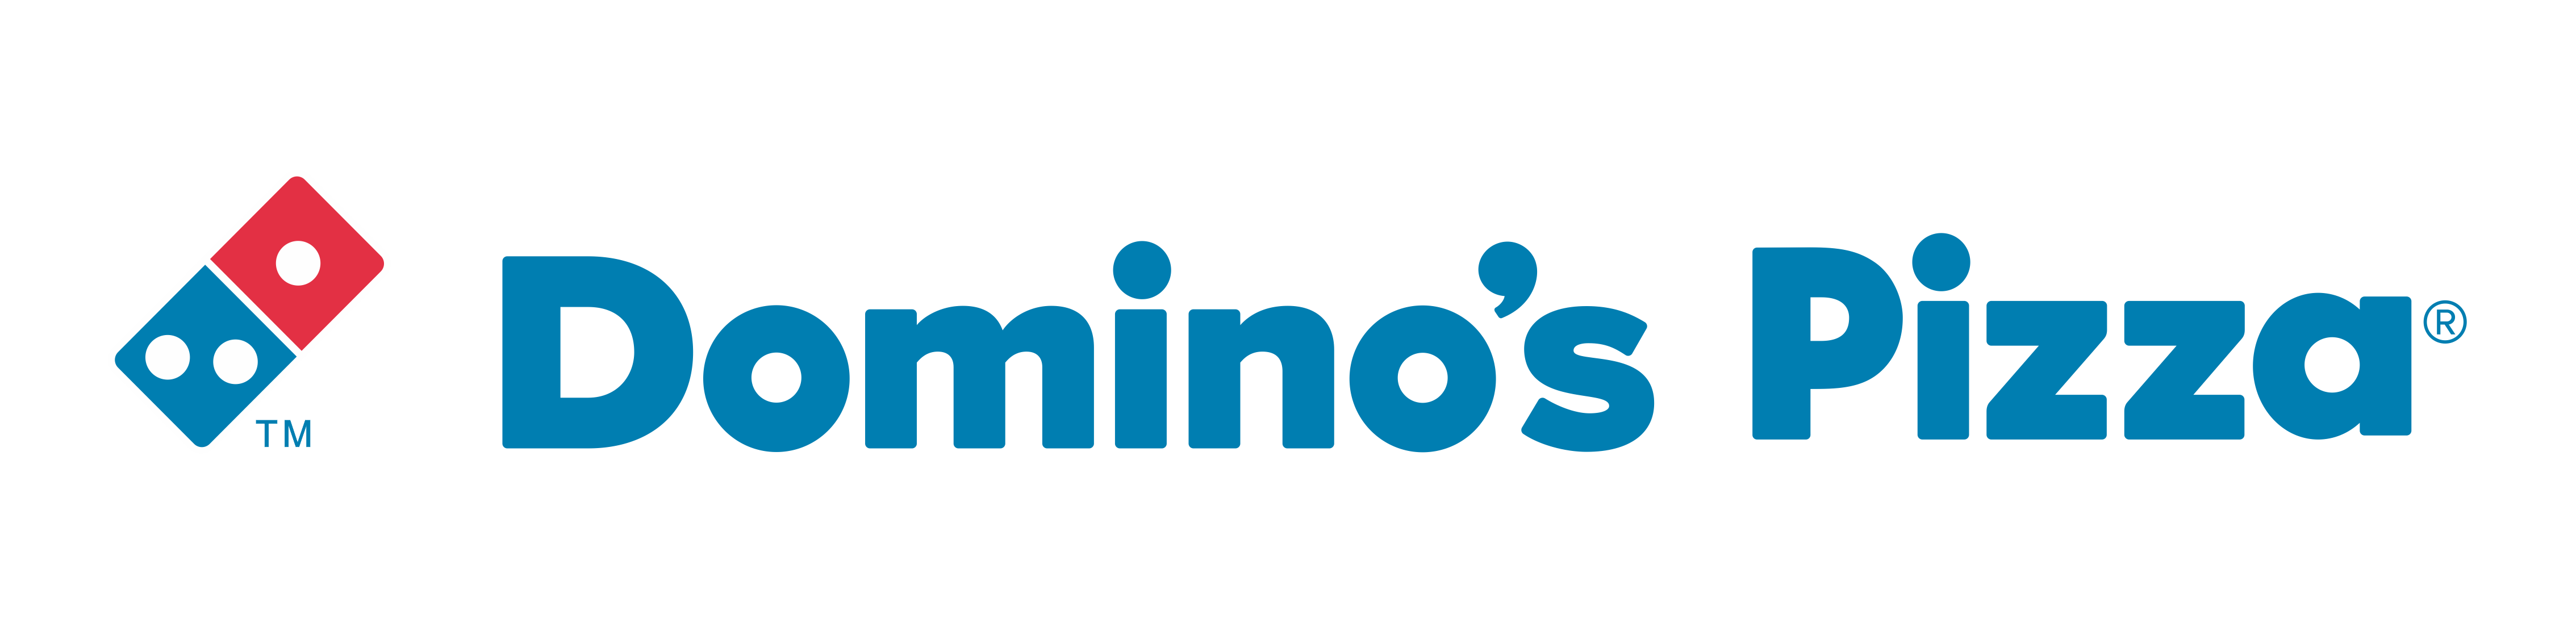 Logo: Domino's Pizza.